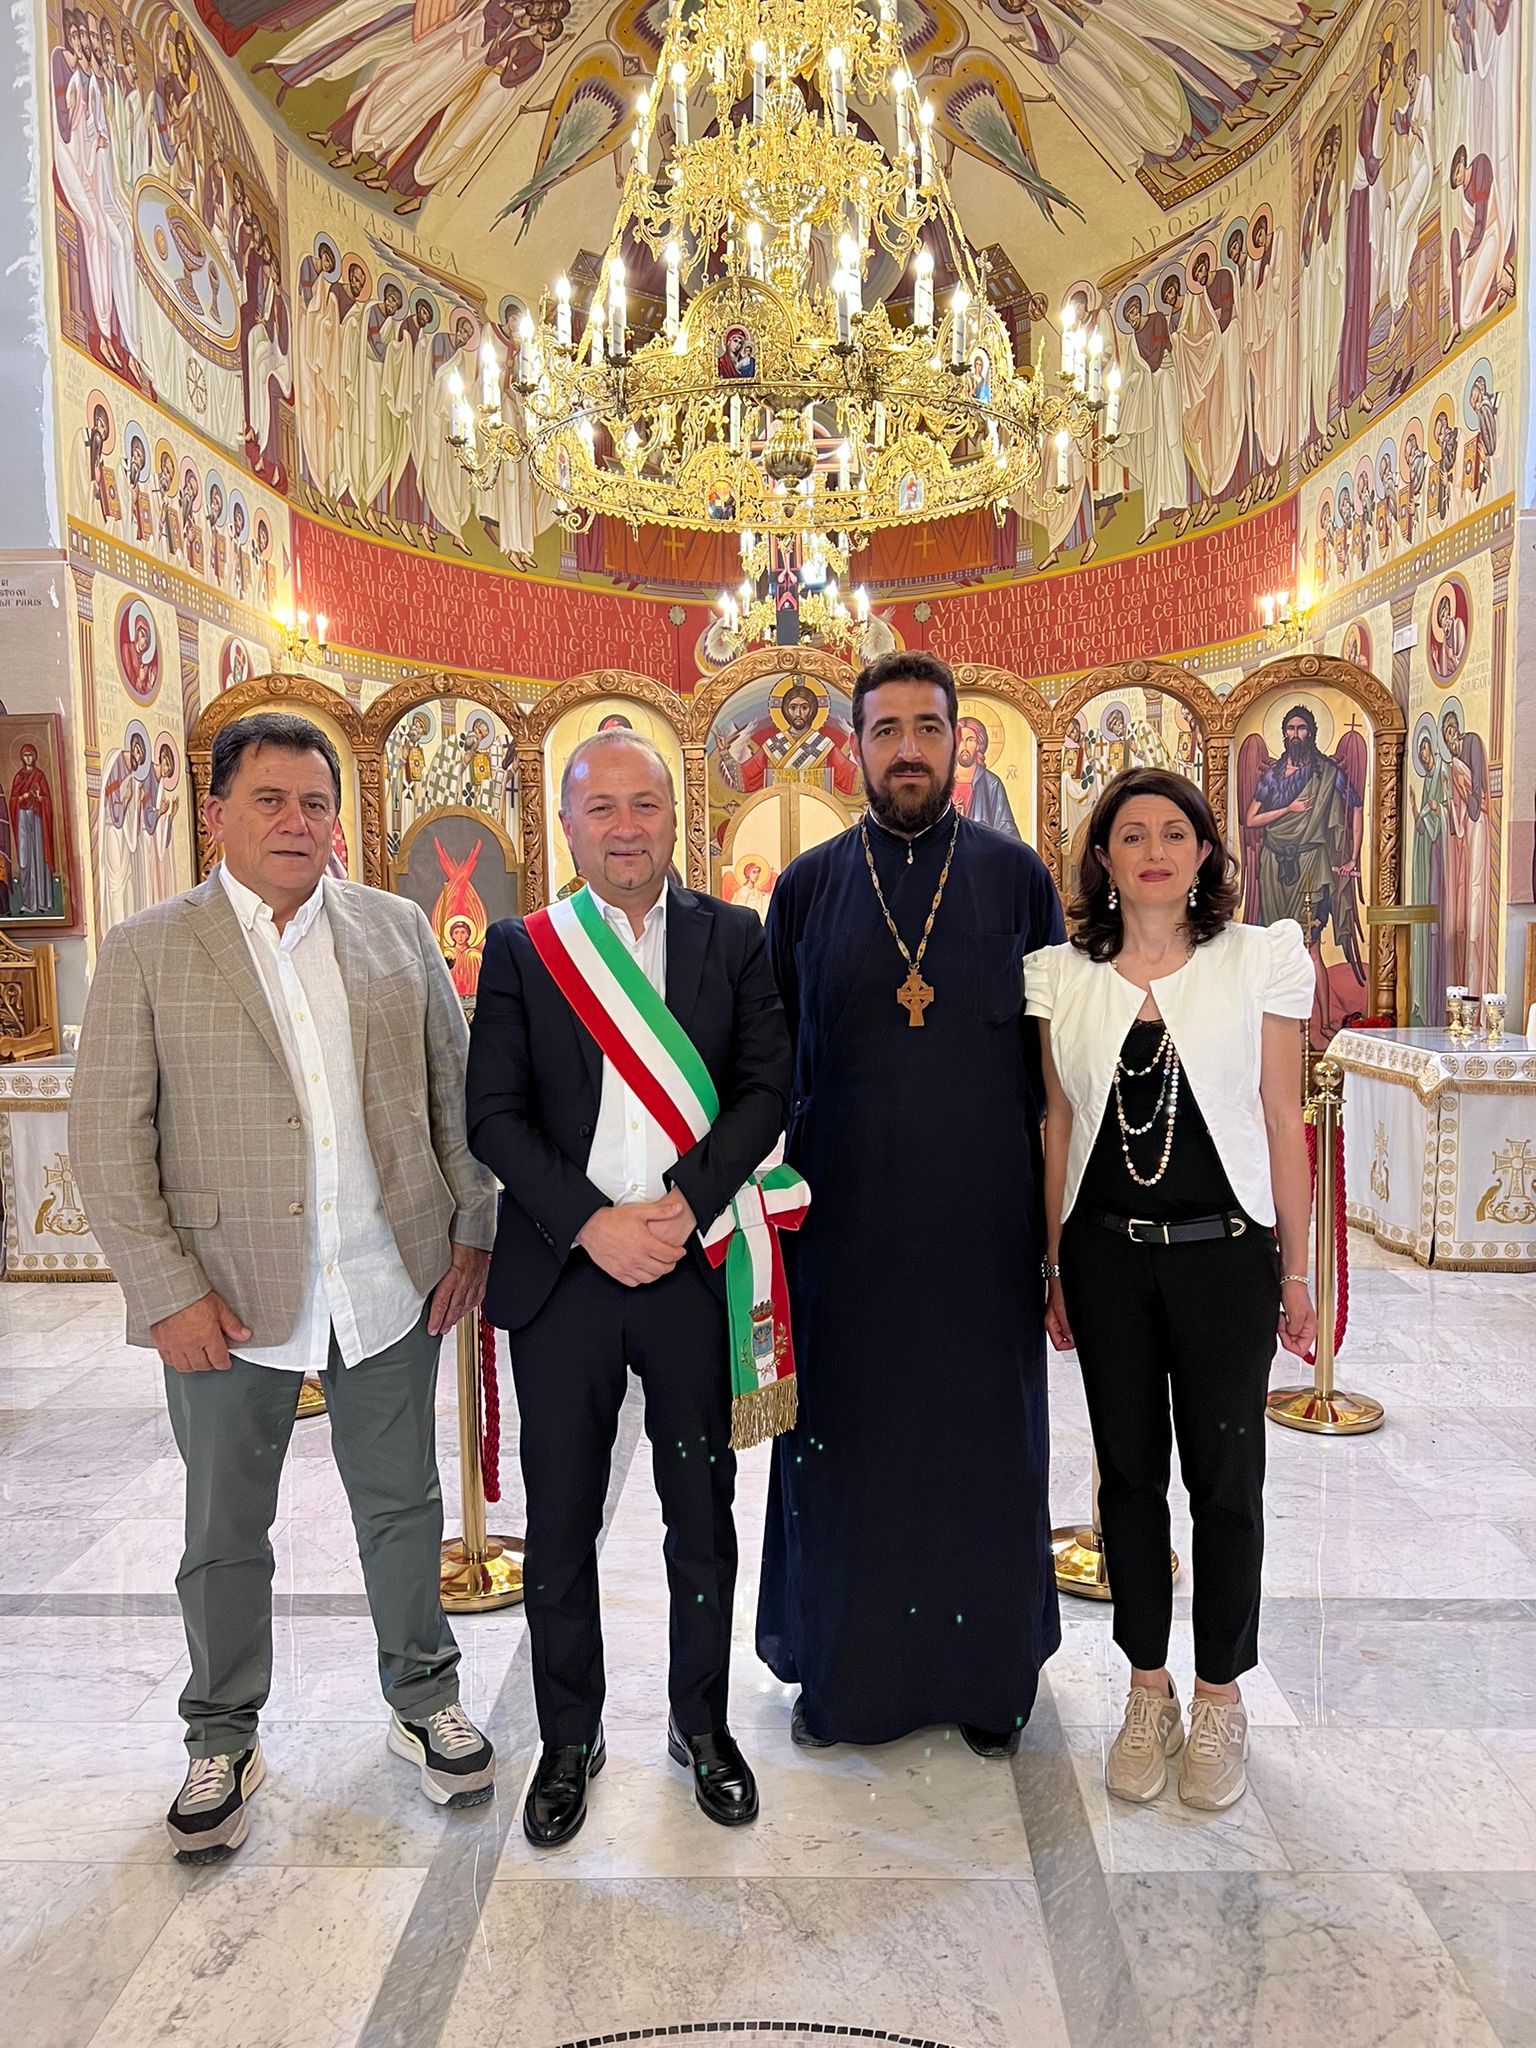 Ospiti illustri nella parrocchia ortodossa di Pescara